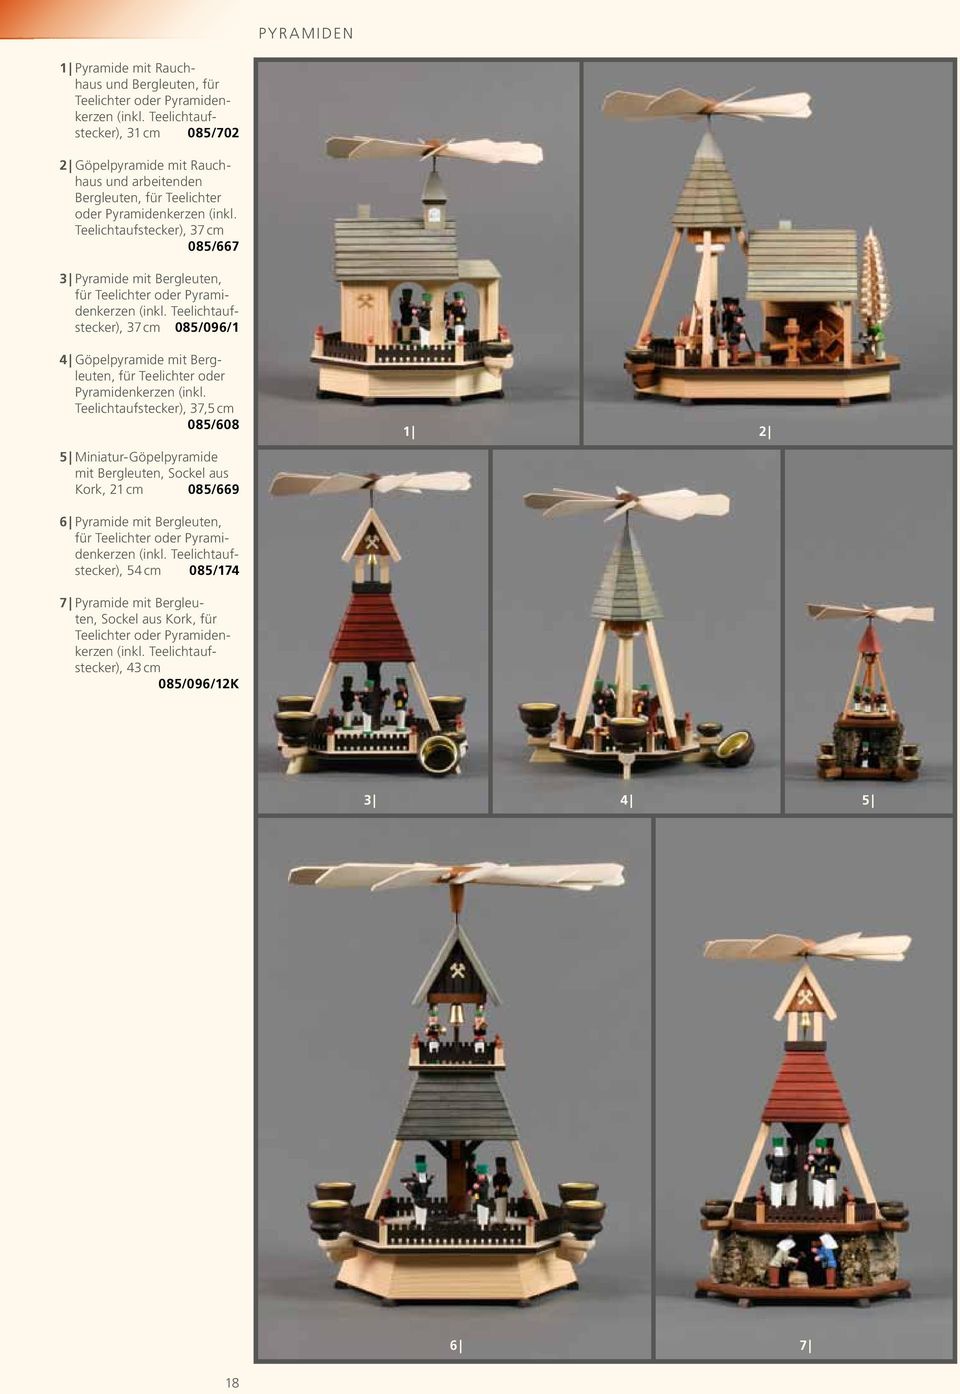 Teelichtaufstecker), 37 cm 085/667 3 Pyramide mit Bergleuten, für Teelichter oder Pyramidenkerzen (inkl.